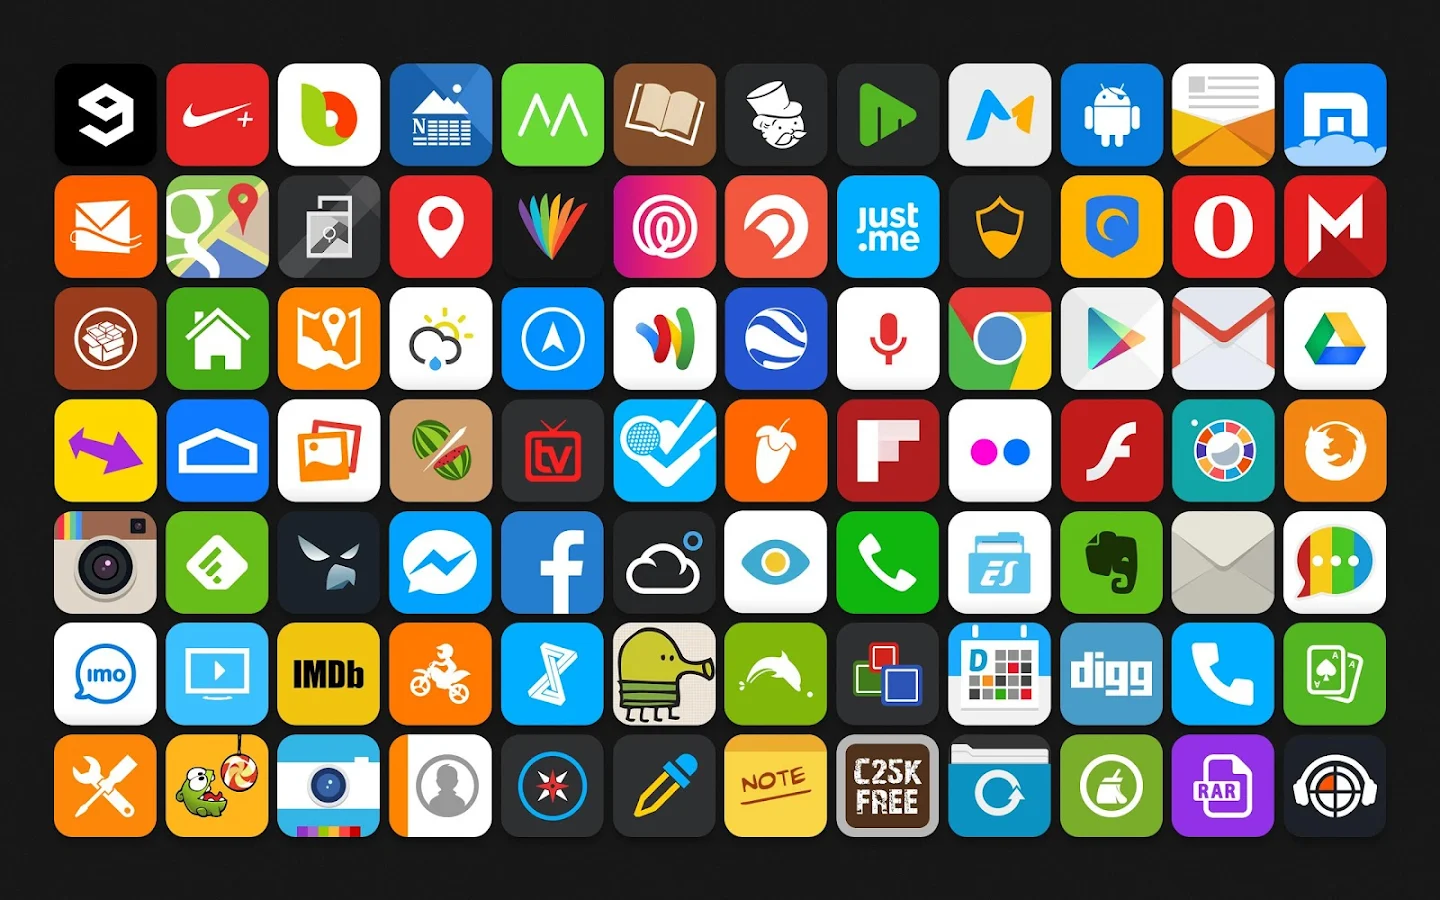 Morena - Flat Icon Pack - screenshot